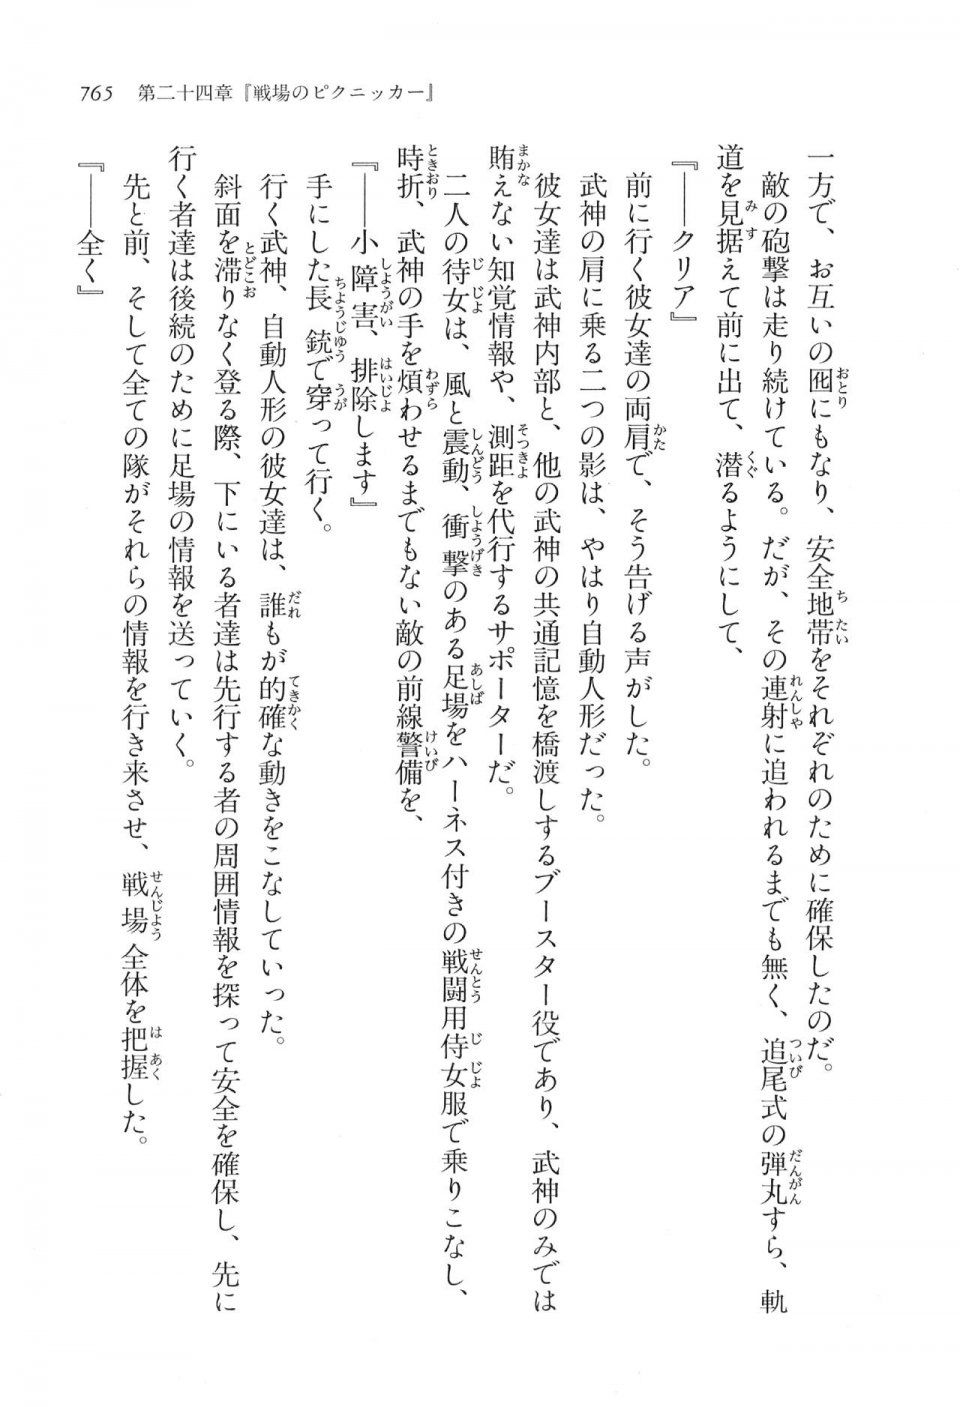 Kyoukai Senjou no Horizon LN Vol 16(7A) - Photo #765